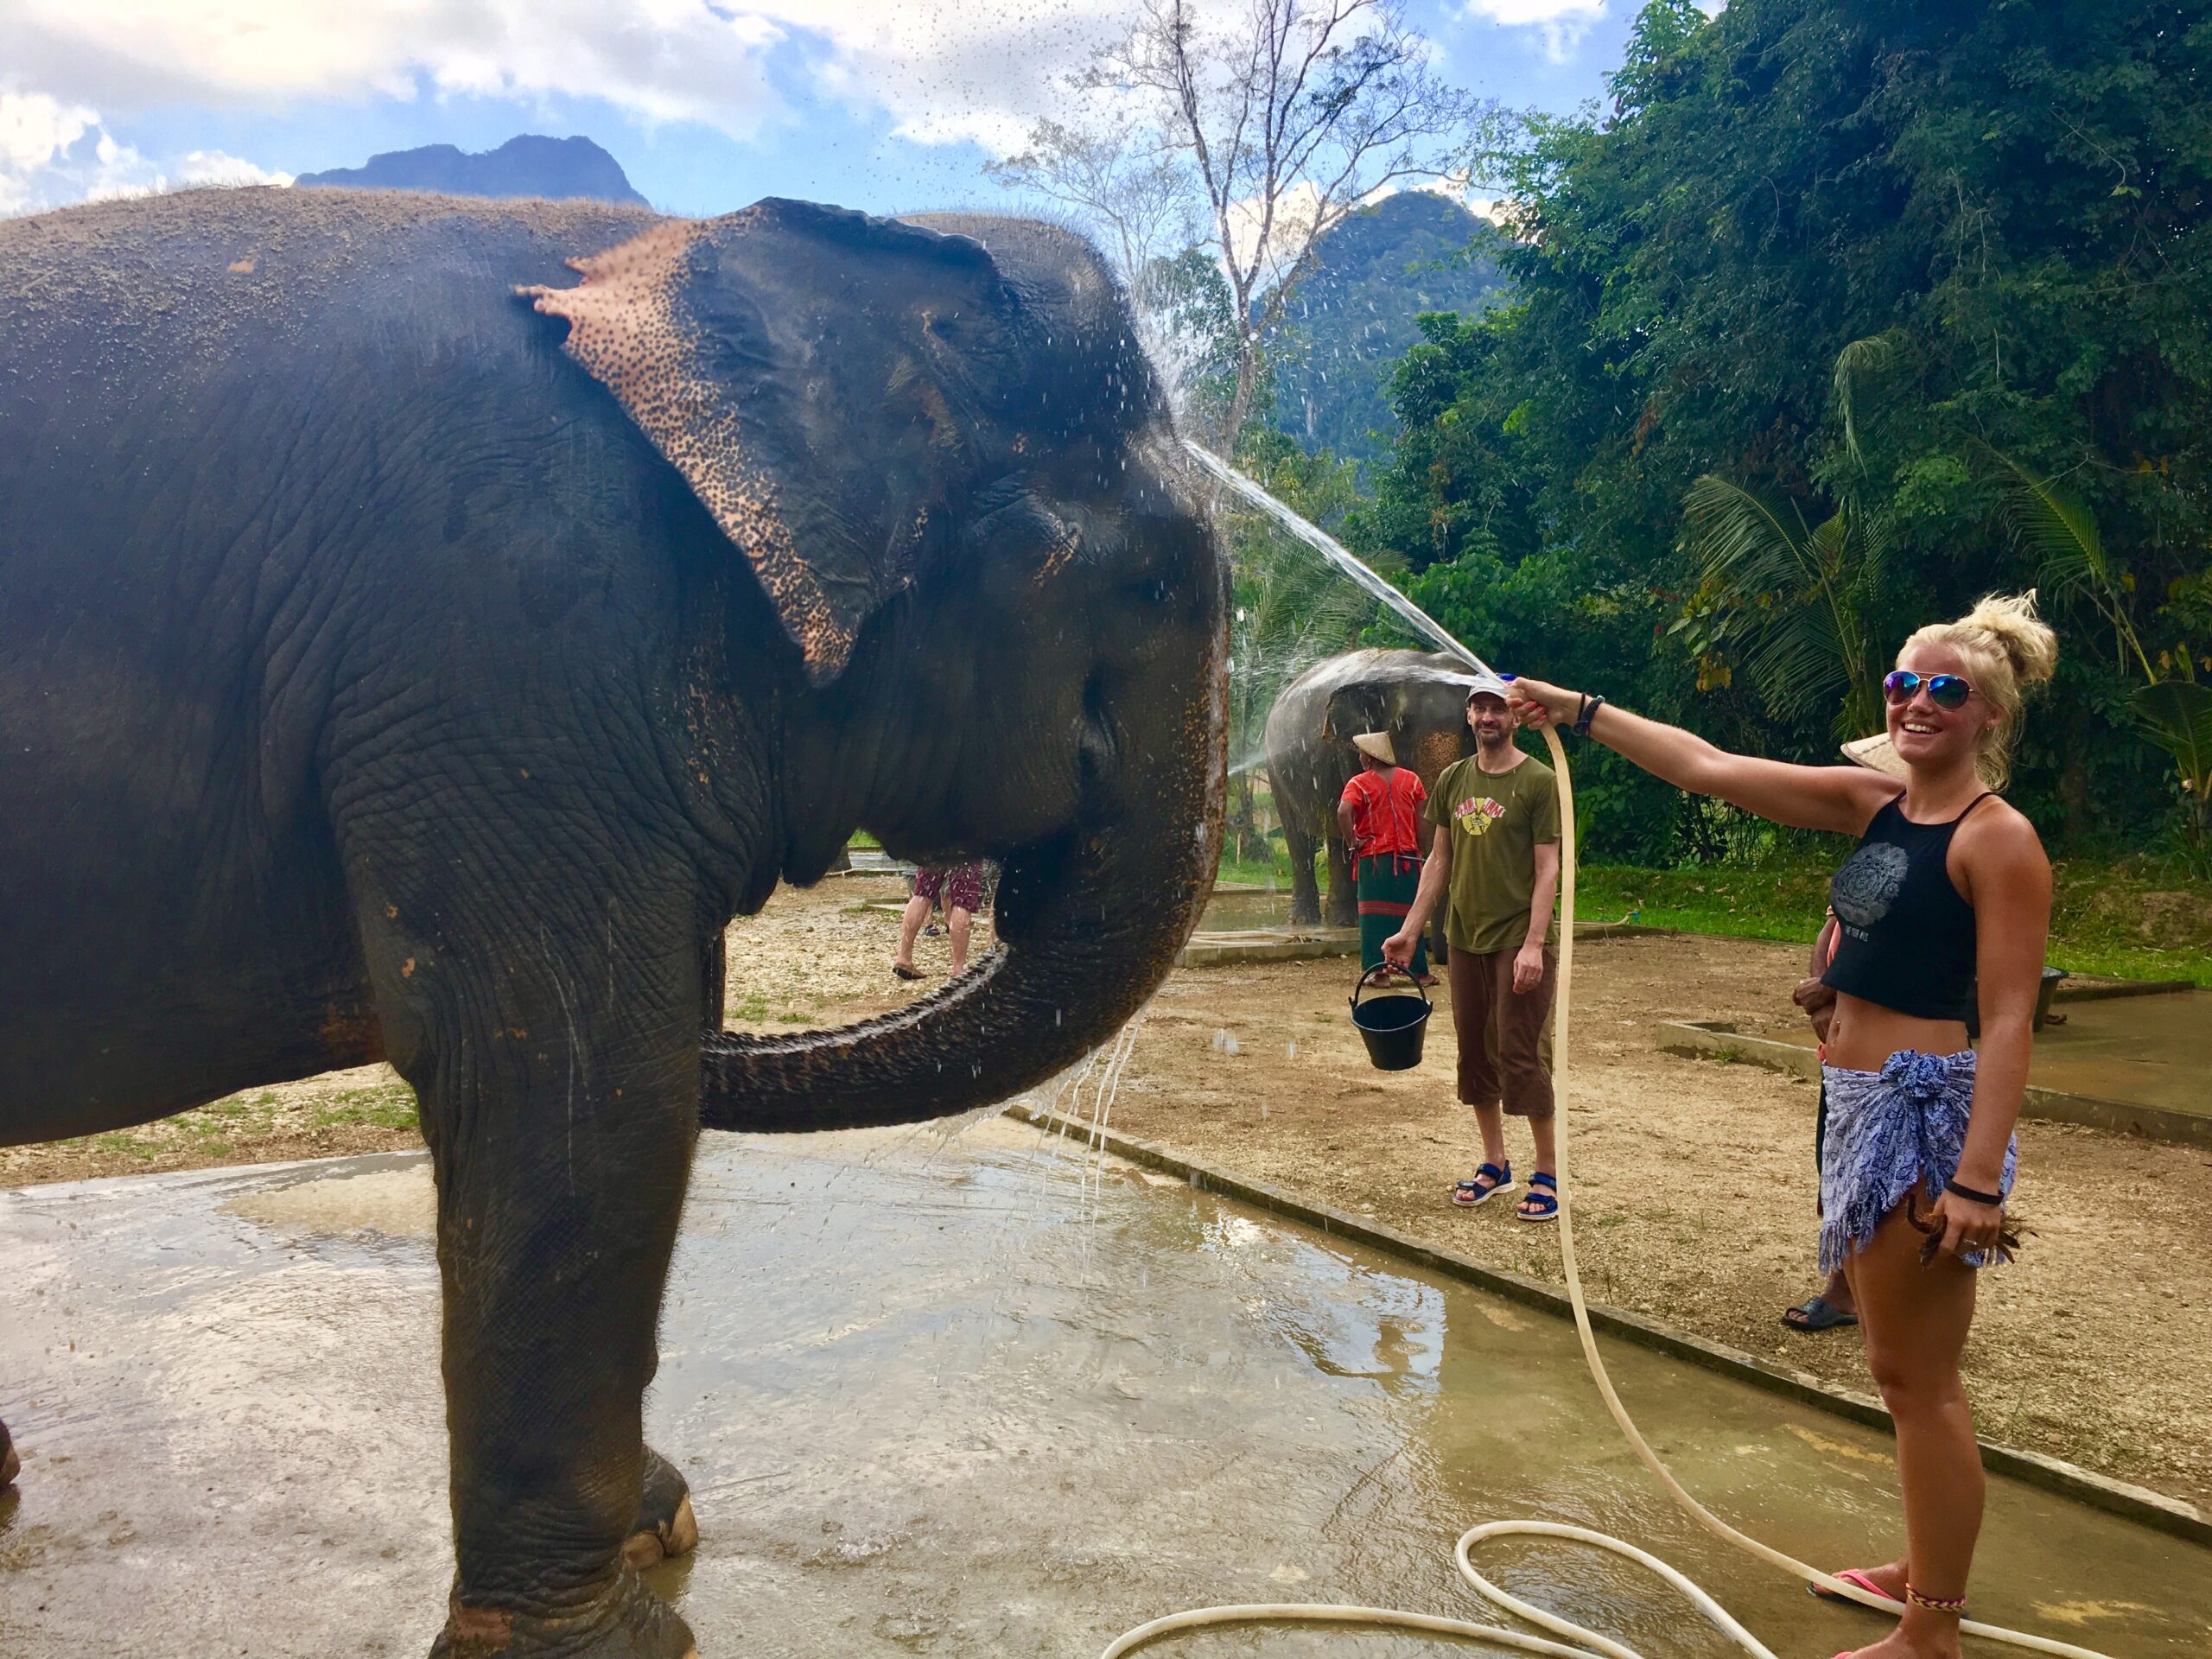 Hannah bathing elephants in Thailand 